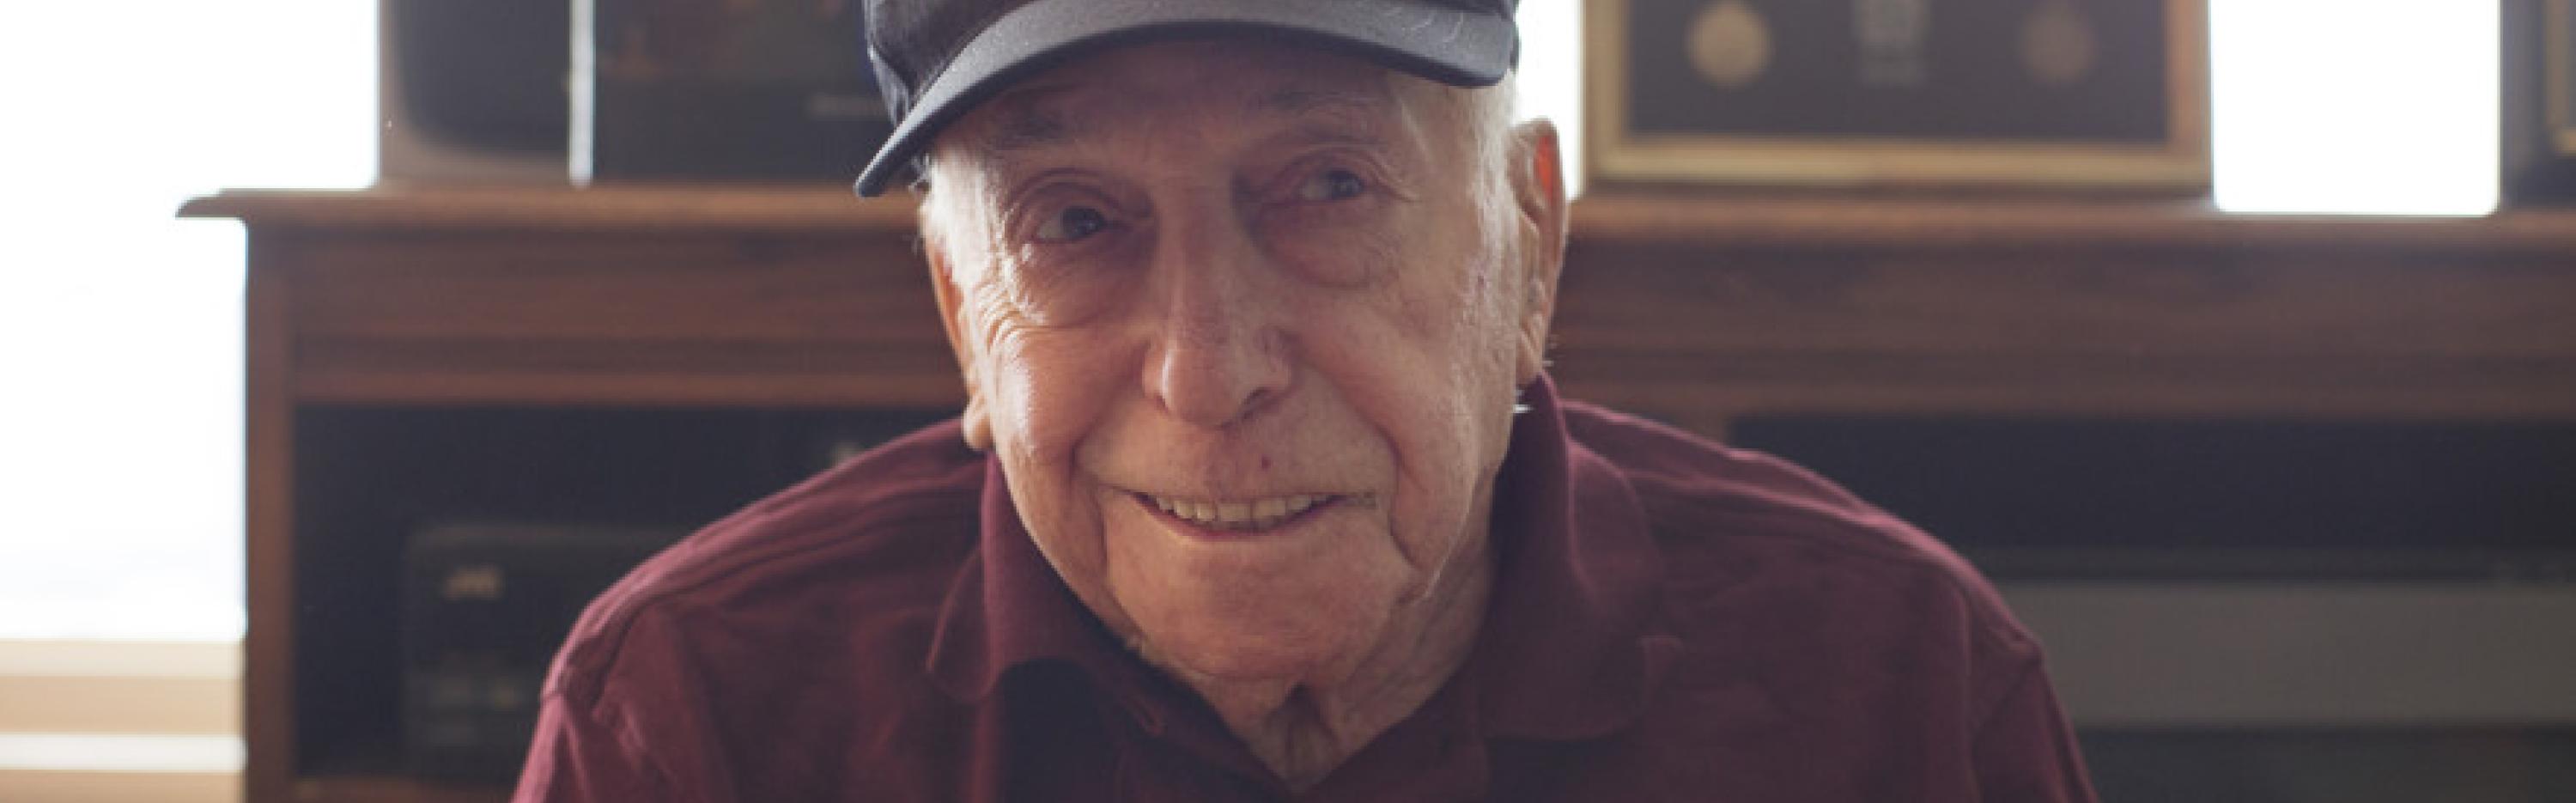 Veteran wearing World War II hat